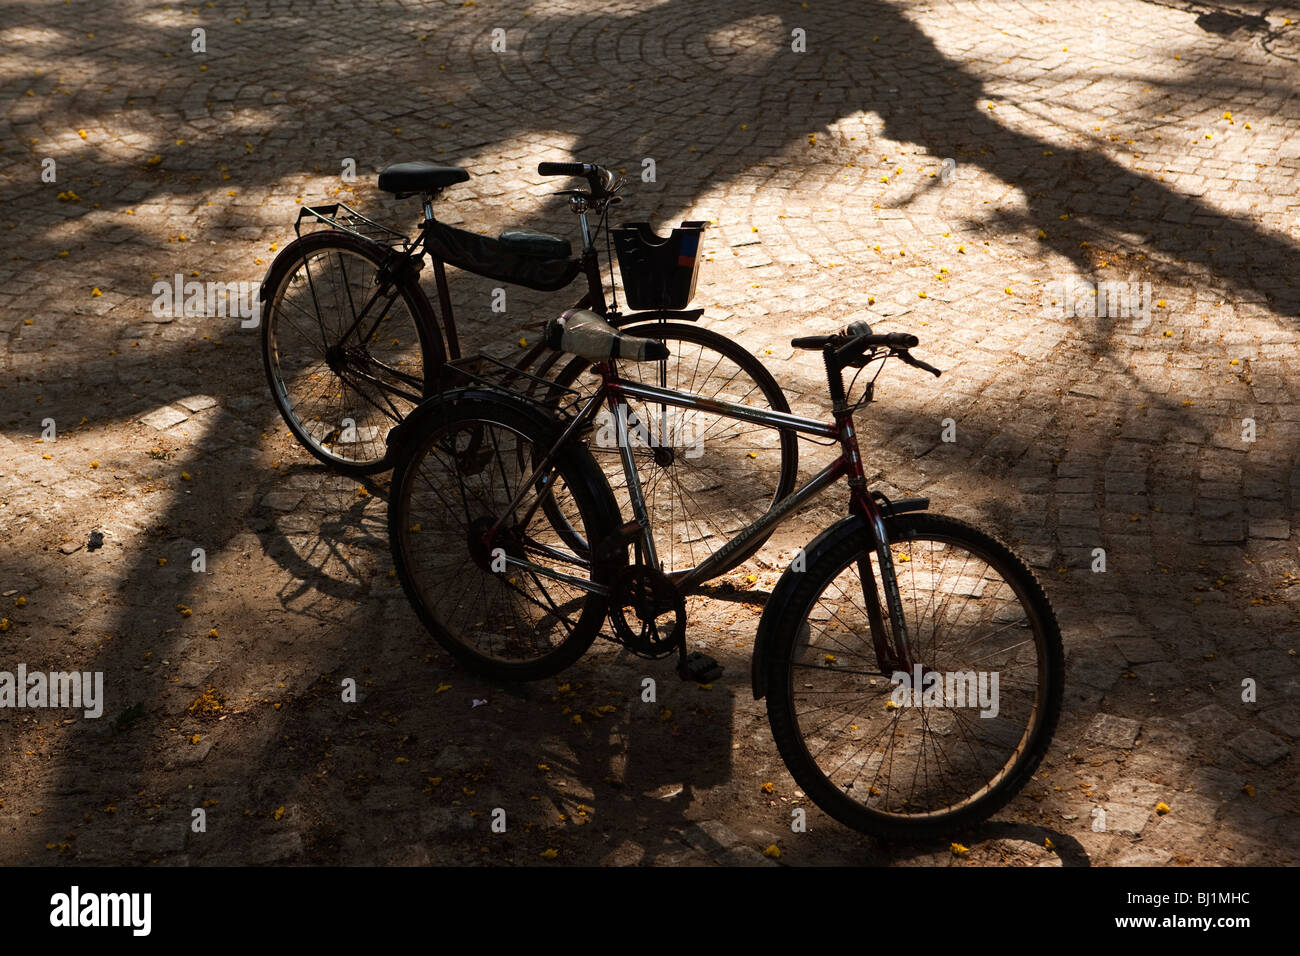 India, Kerala, Kochi, Fort Cochin, paseo marítimo, dos bicicletas en la tarde la luz del sol Foto de stock